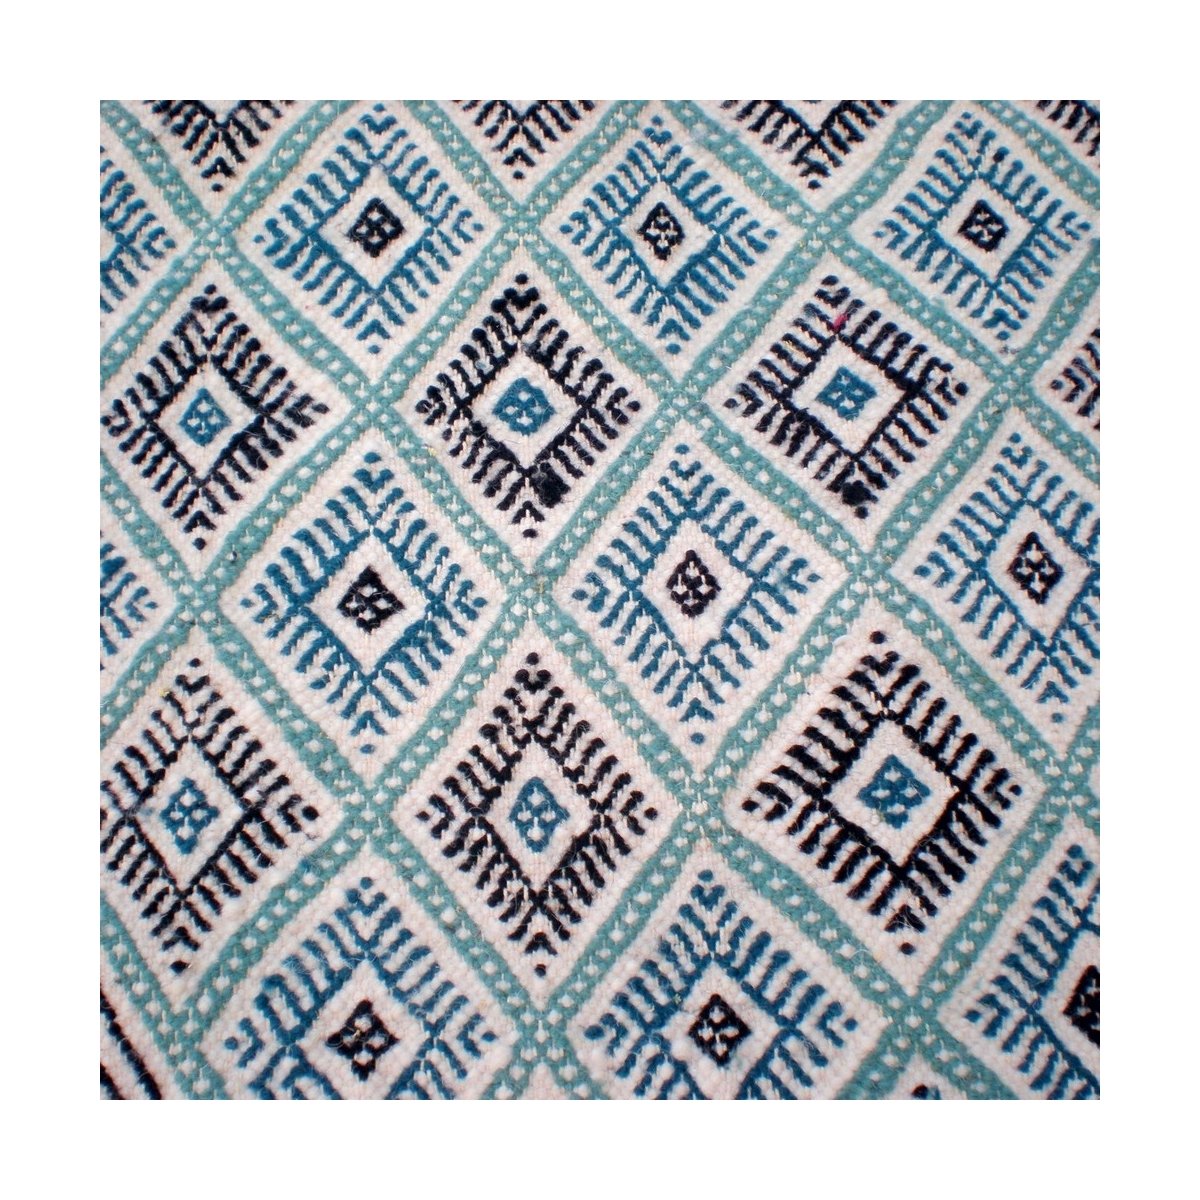 Berber tapijt Groot Tapijt Margoum Morjane 100x200 Blauw/Wit (Handgeweven, Wol, Tunesië) Tunesisch Margoum Tapijt uit de stad Ka